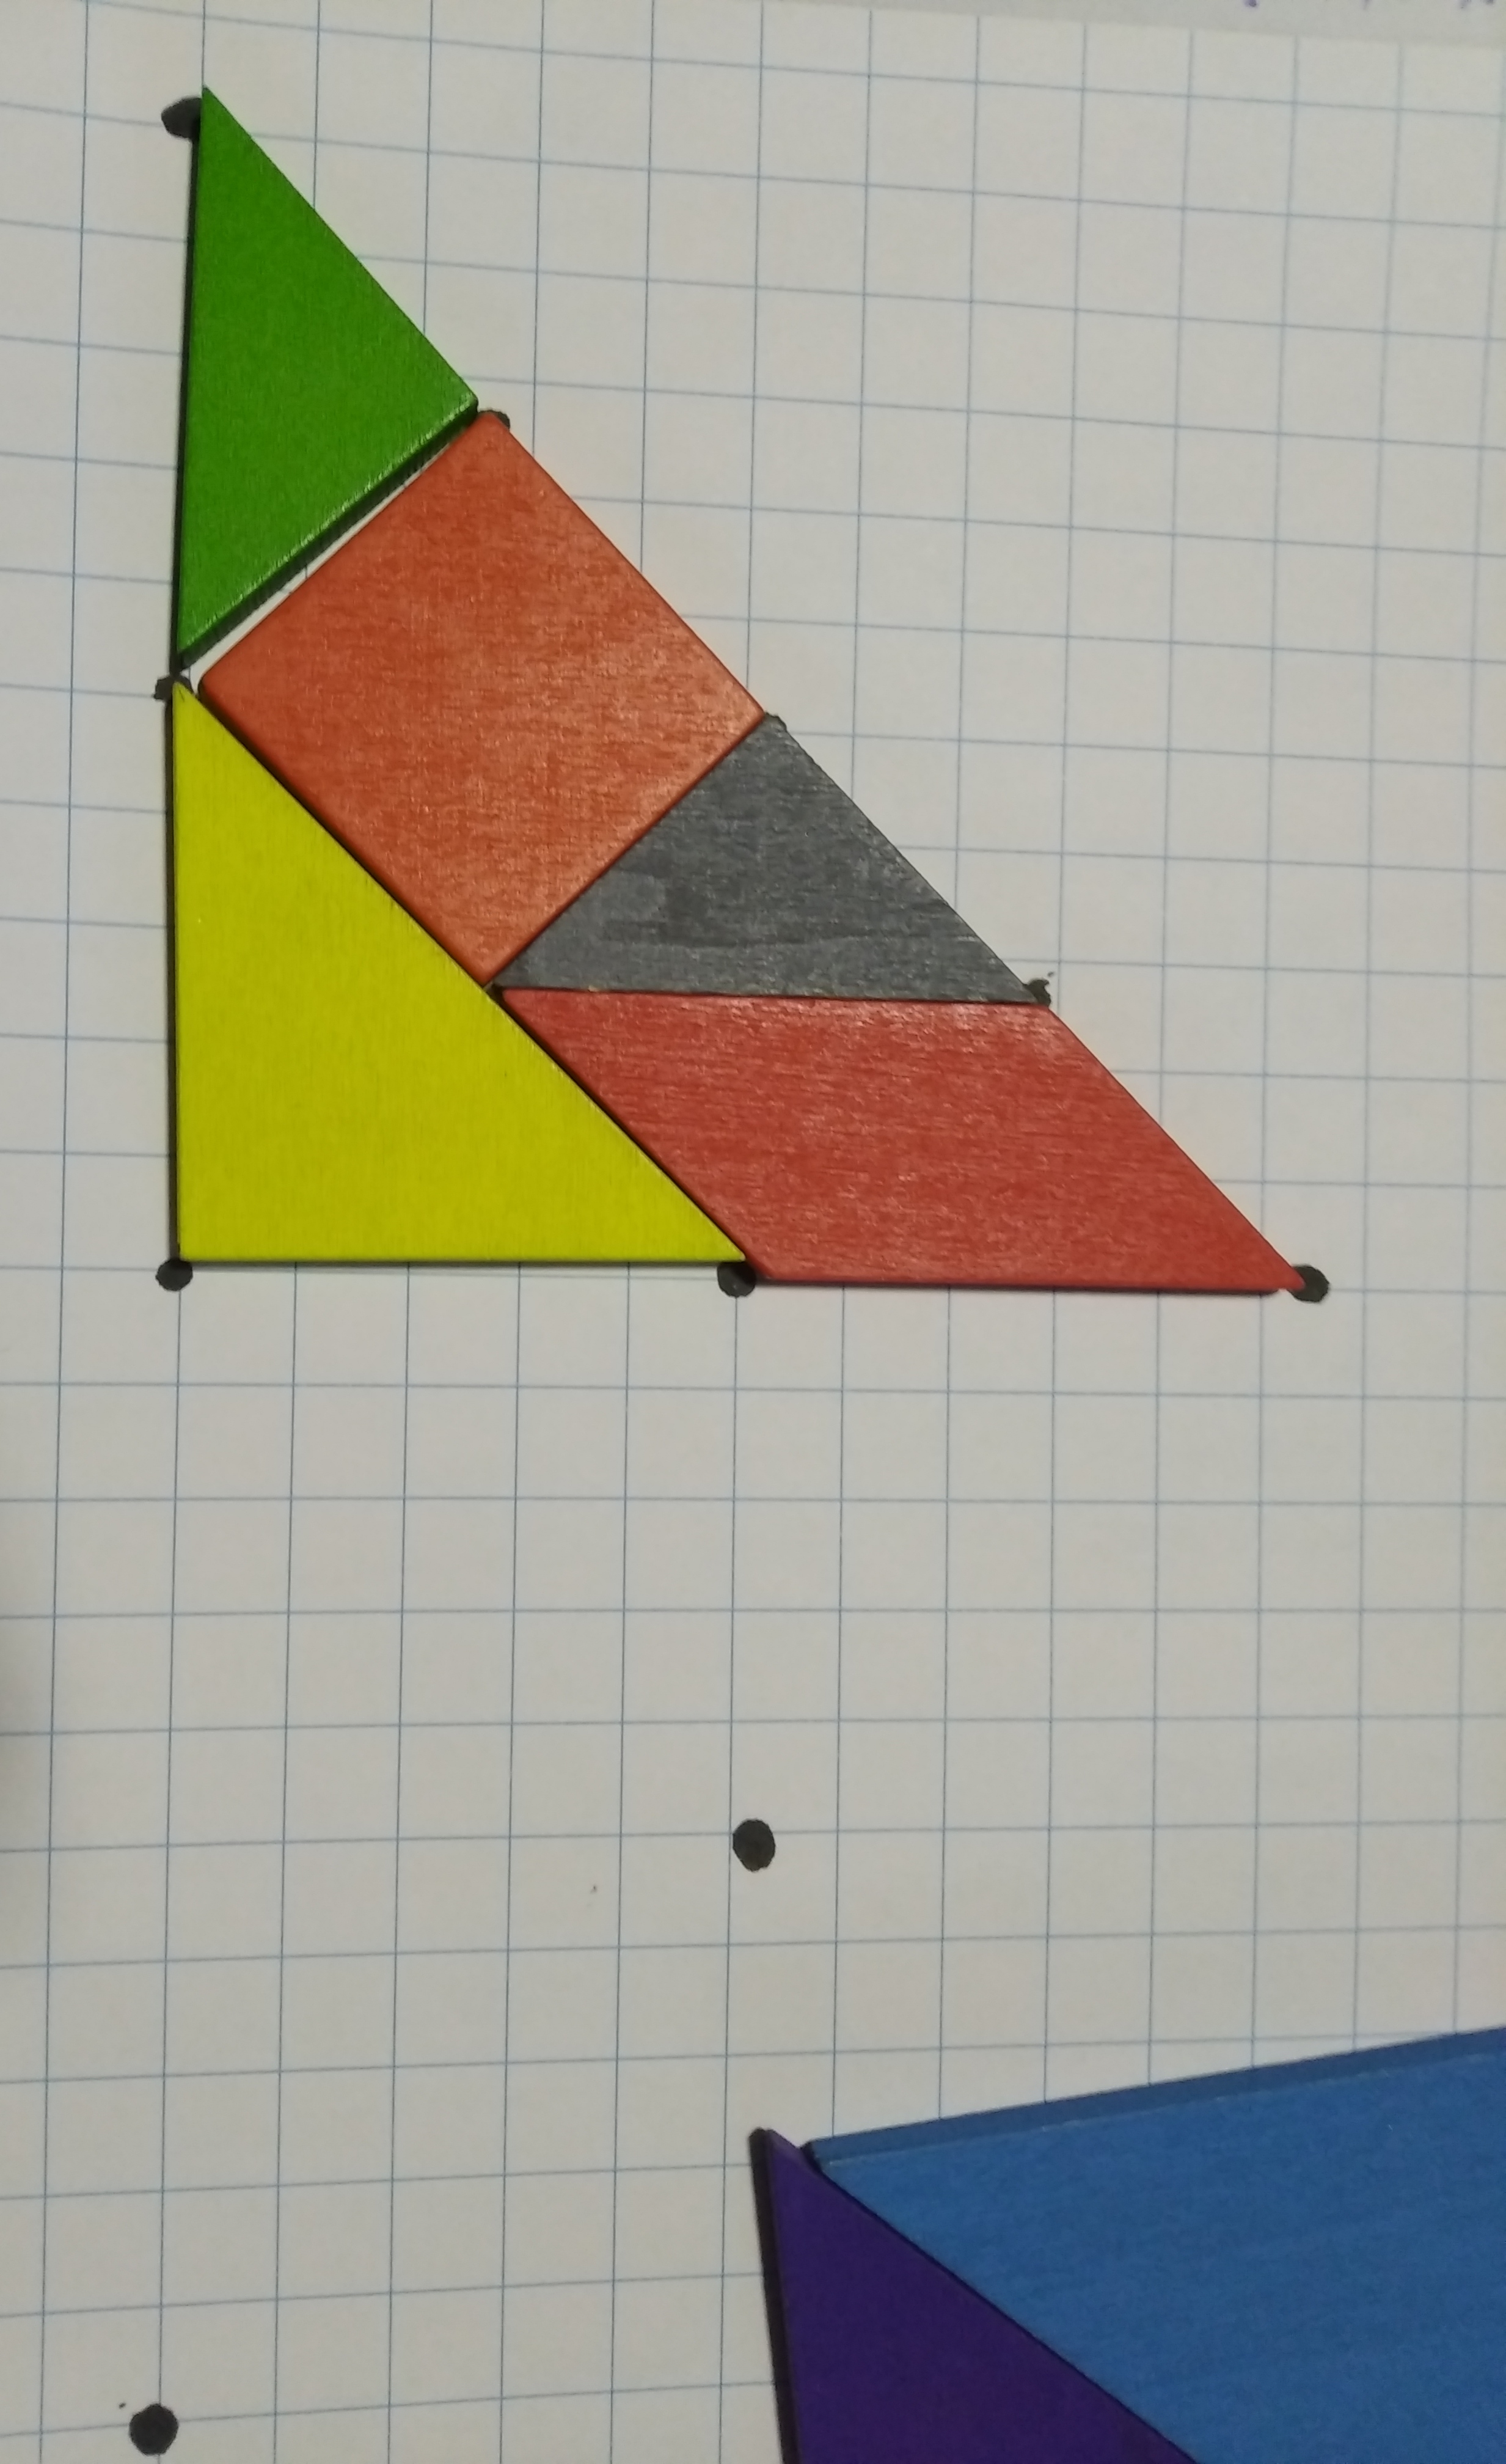 triángulo con todos los vértices de sus piezas marcados